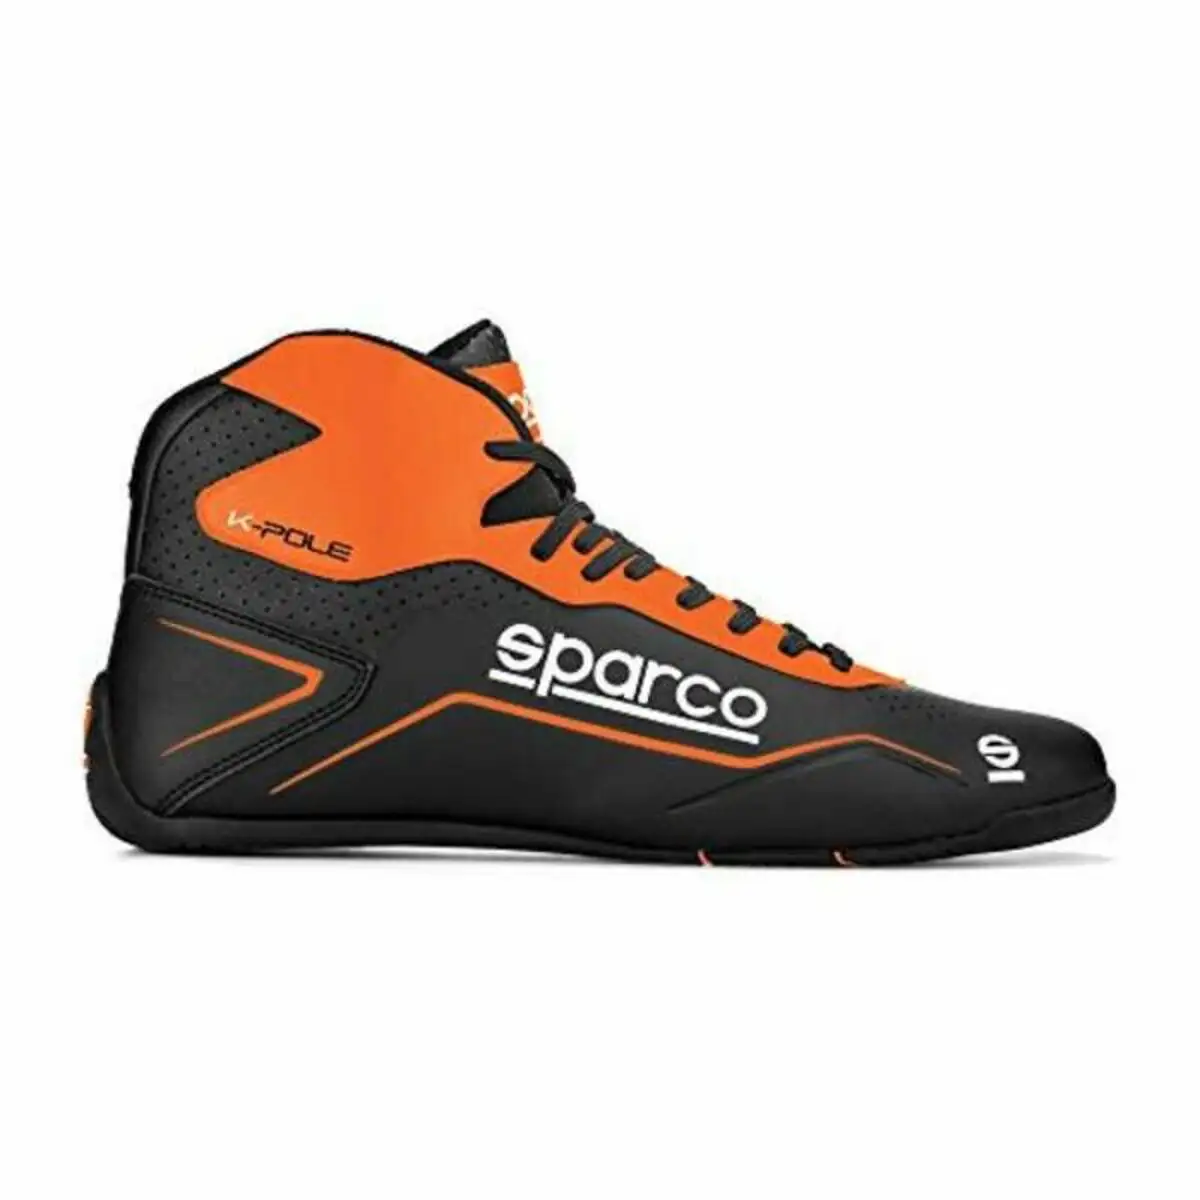 Chaussures de course sparco k pole orange taille 40 _1728. Bienvenue sur DIAYTAR SENEGAL - Votre Galerie Shopping Personnalisée. Découvrez un monde de produits diversifiés qui expriment votre style unique et votre passion pour la qualité.